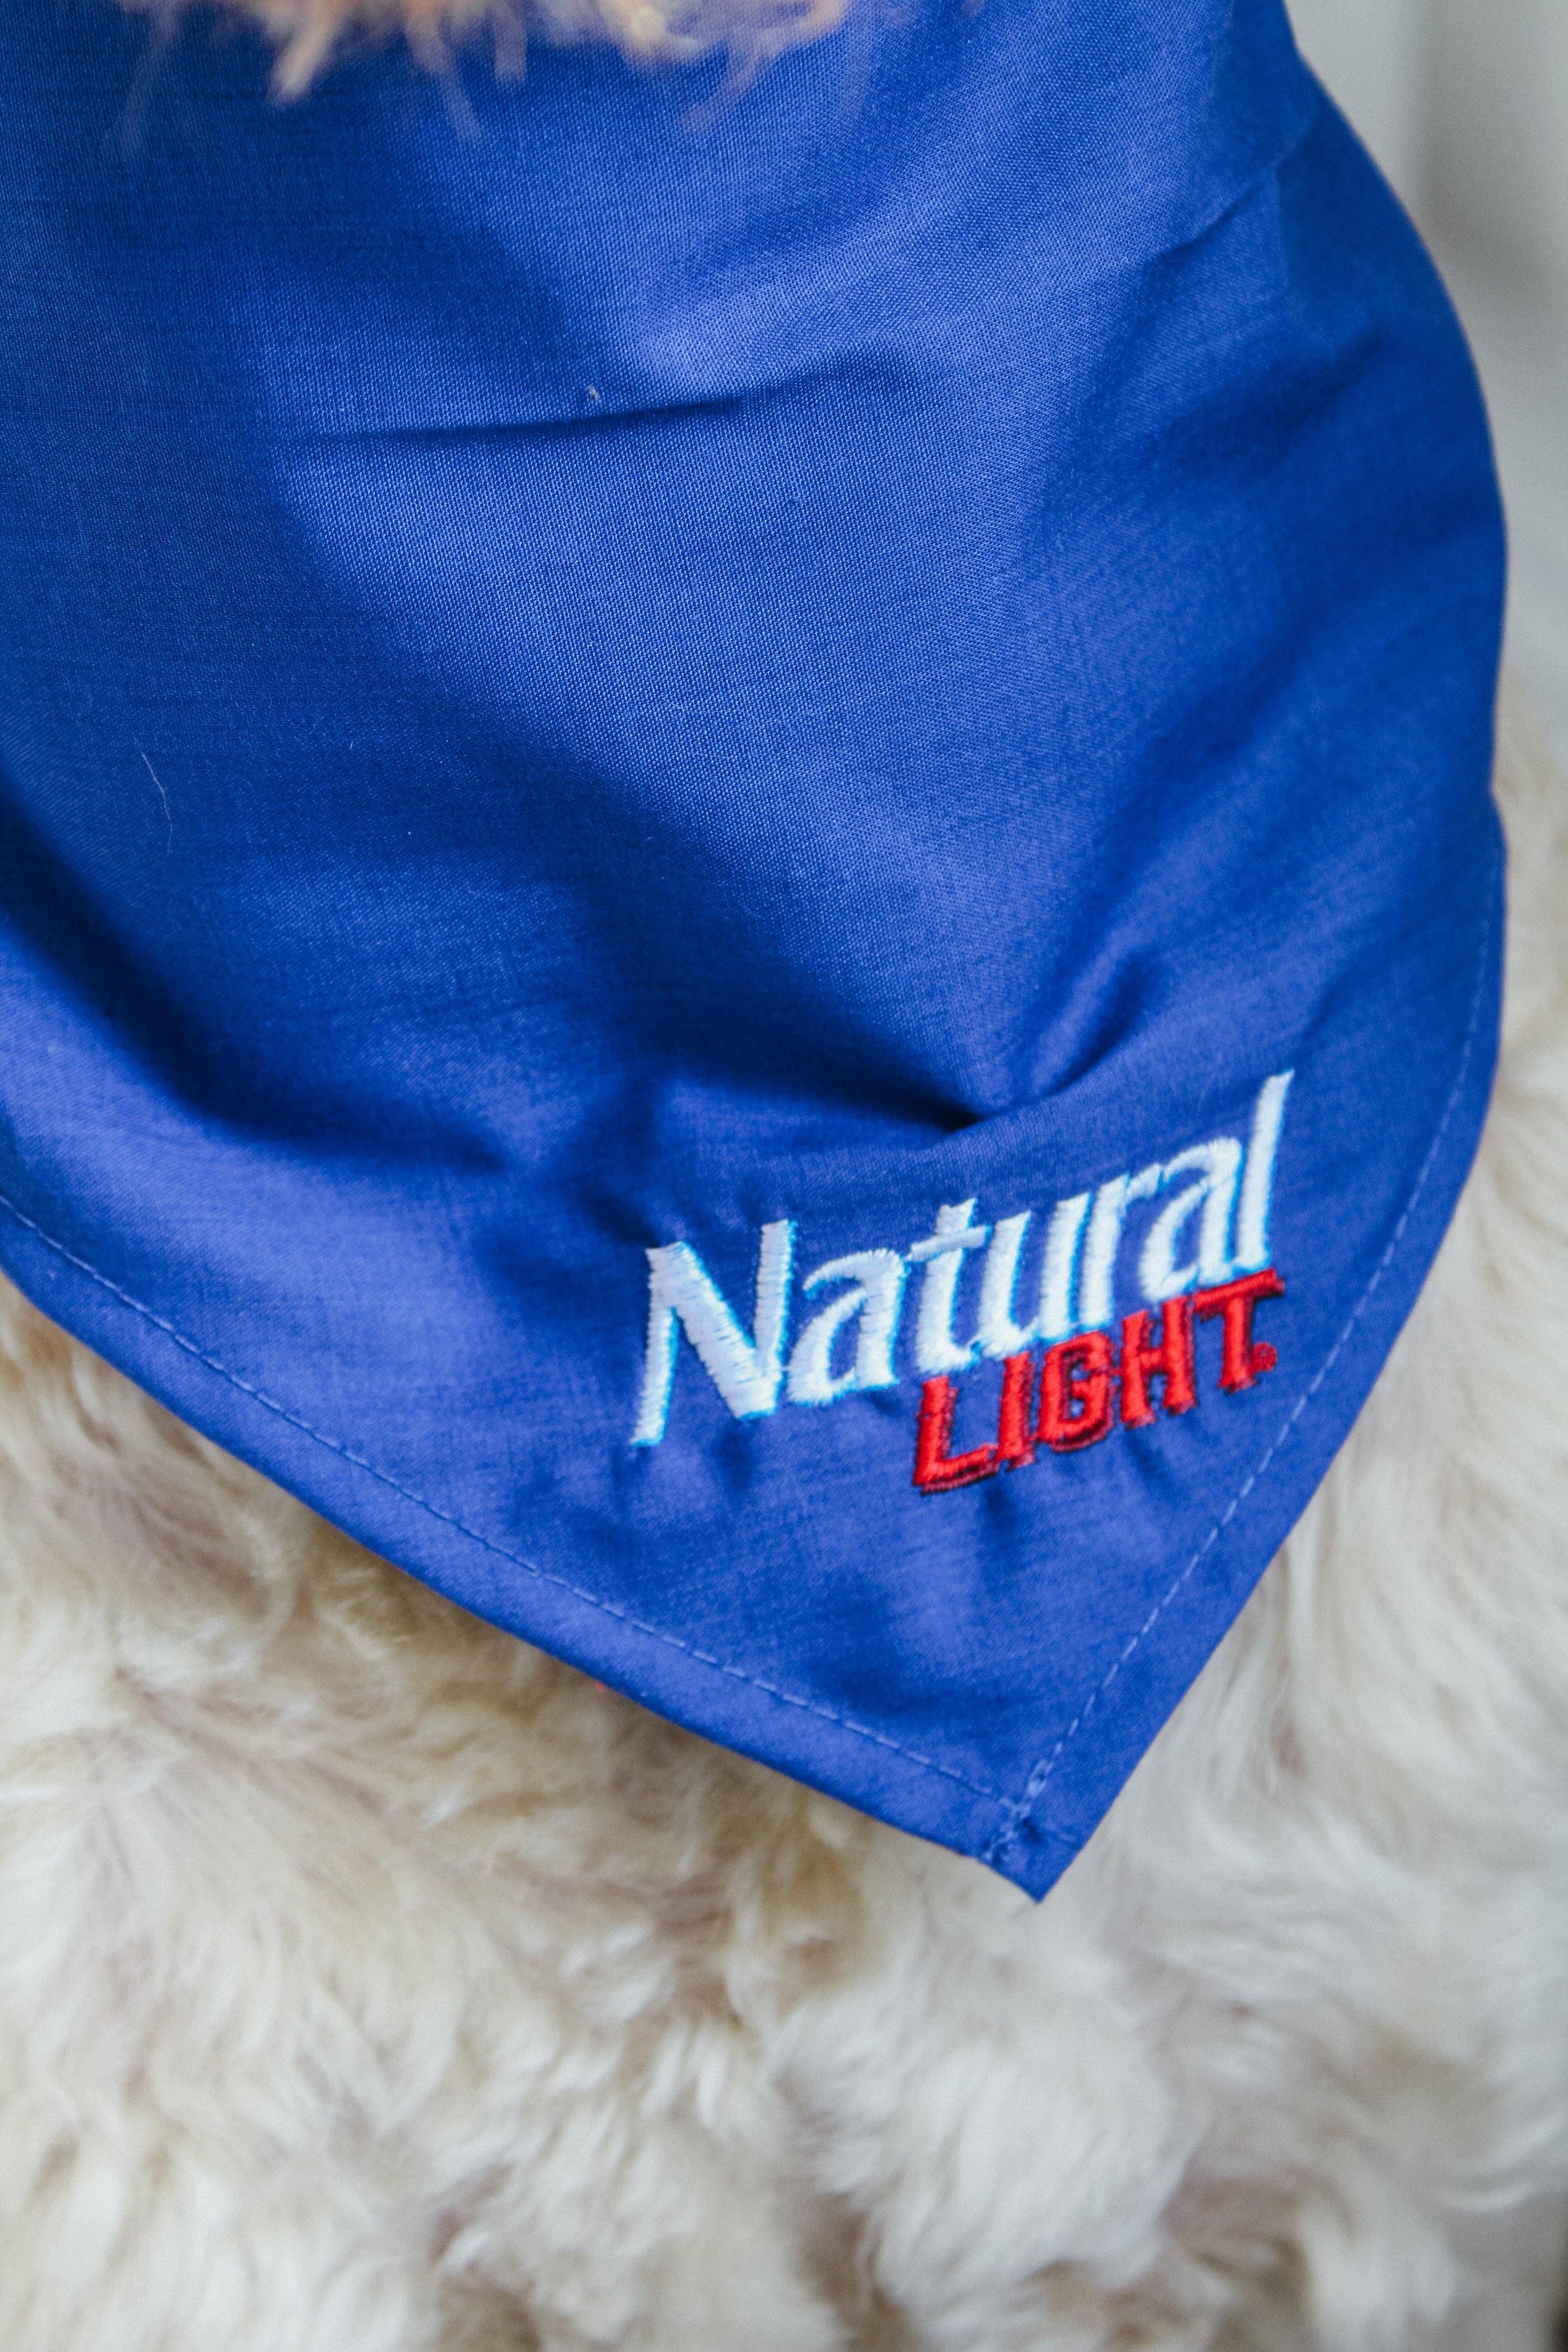 Labradoodle Closeup Wearing Natural Light Pet Bandana